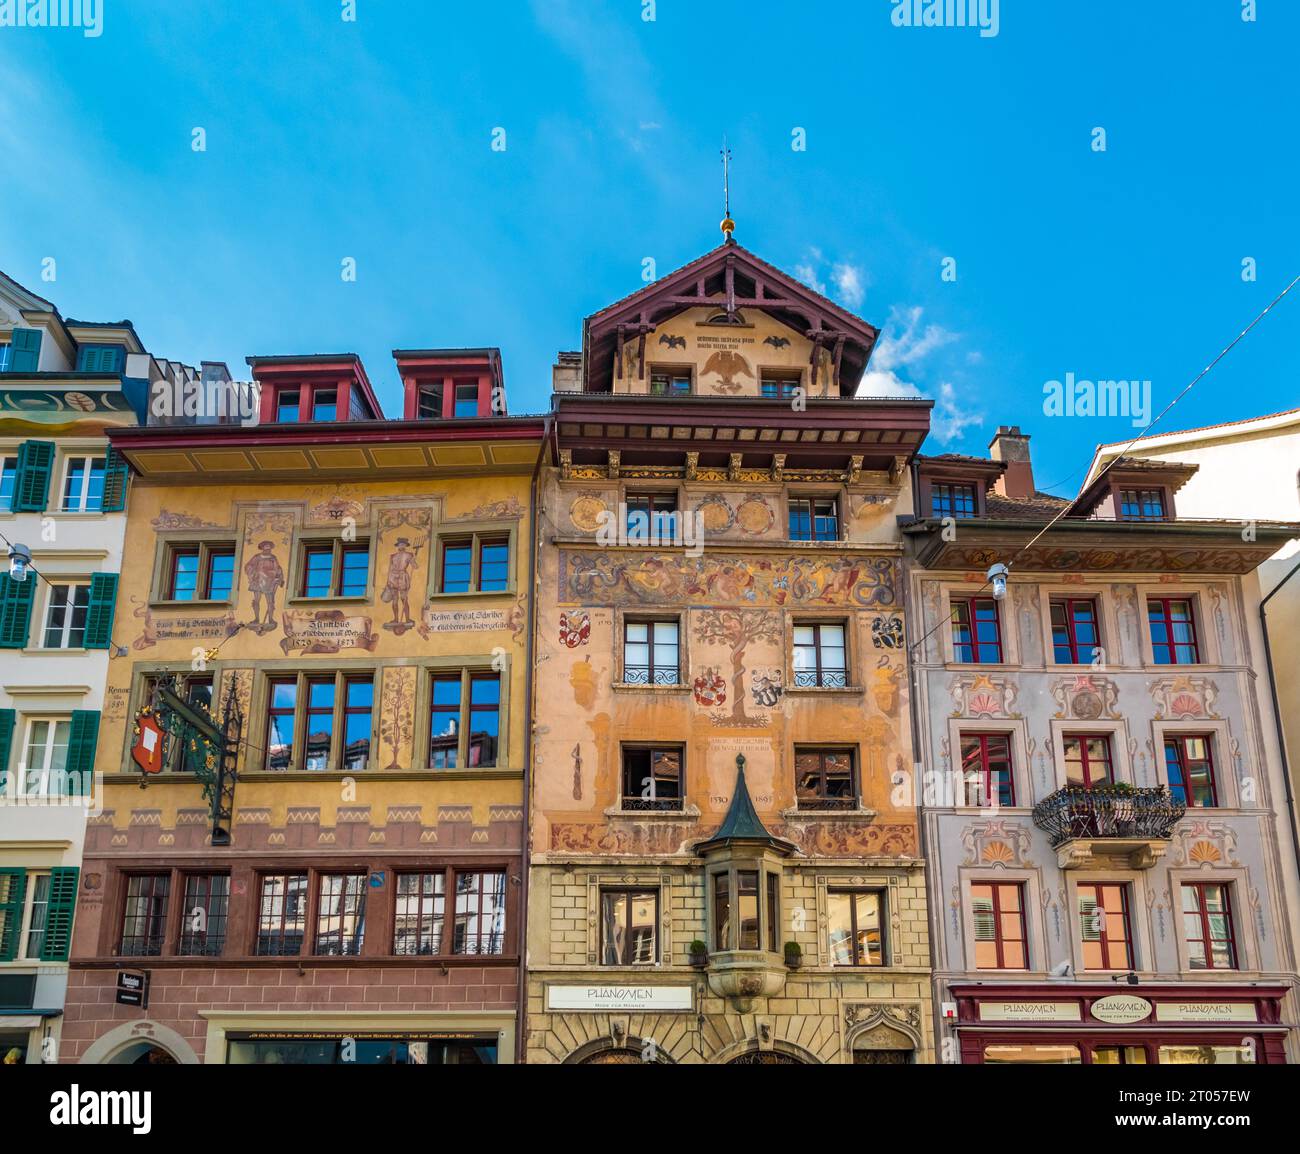 Belle vue rapprochée d'une rangée de maisons historiques ornées de fresques sur la célèbre place Weinmarkt dans la vieille ville de Lucerne, en Suisse. Banque D'Images